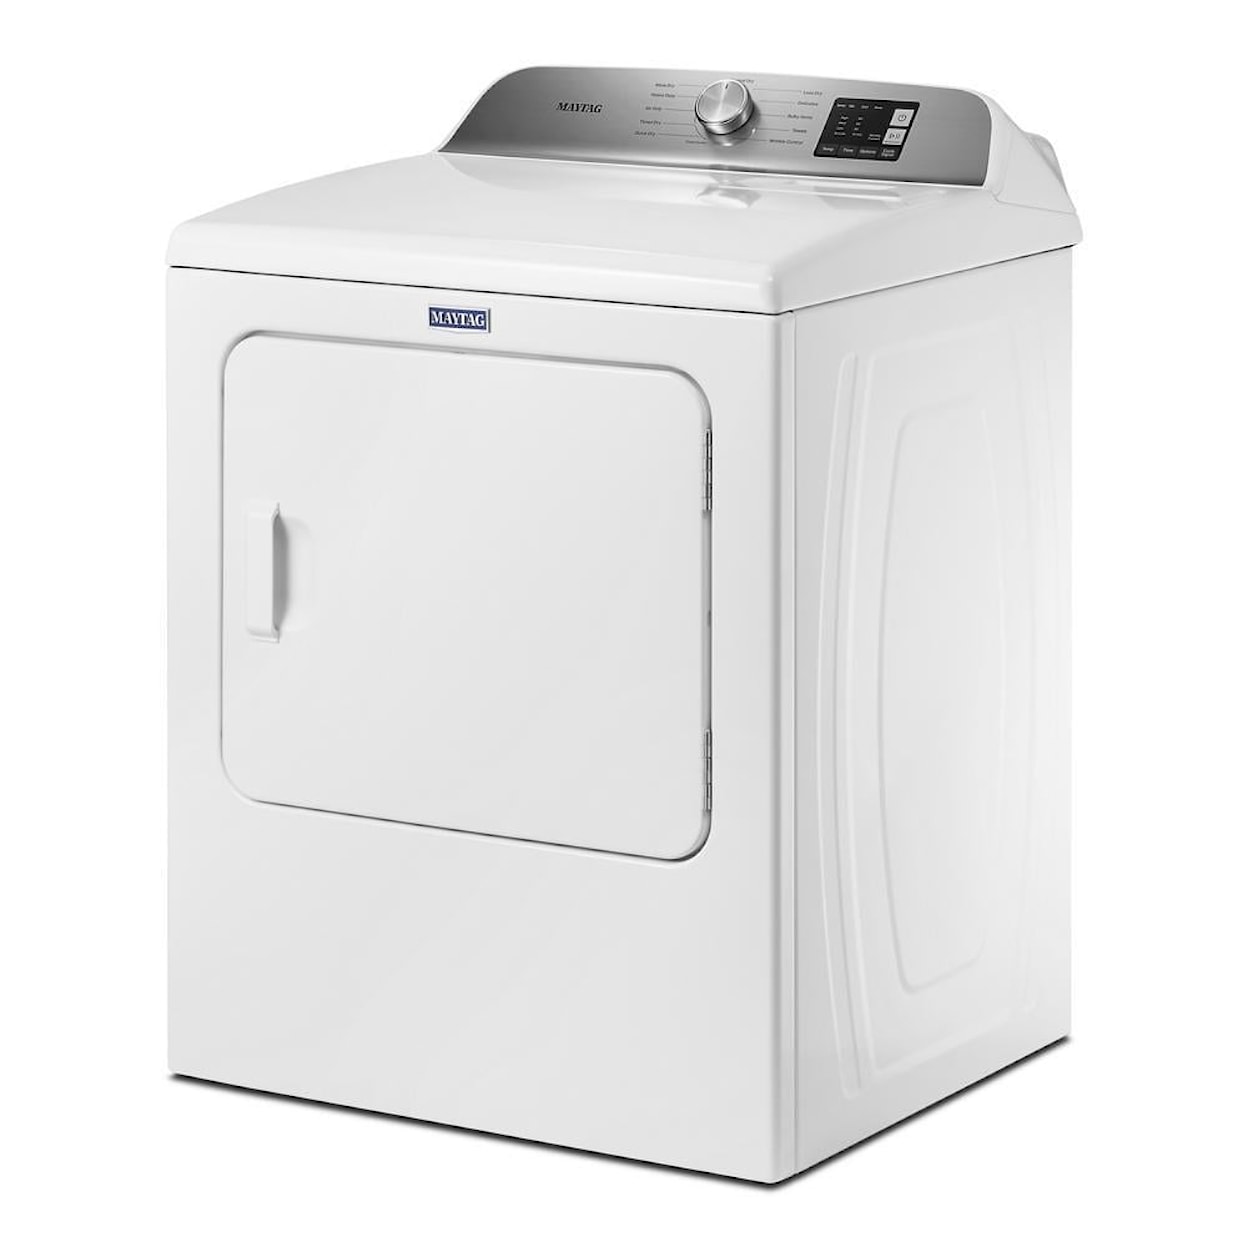 Maytag Laundry Dryer